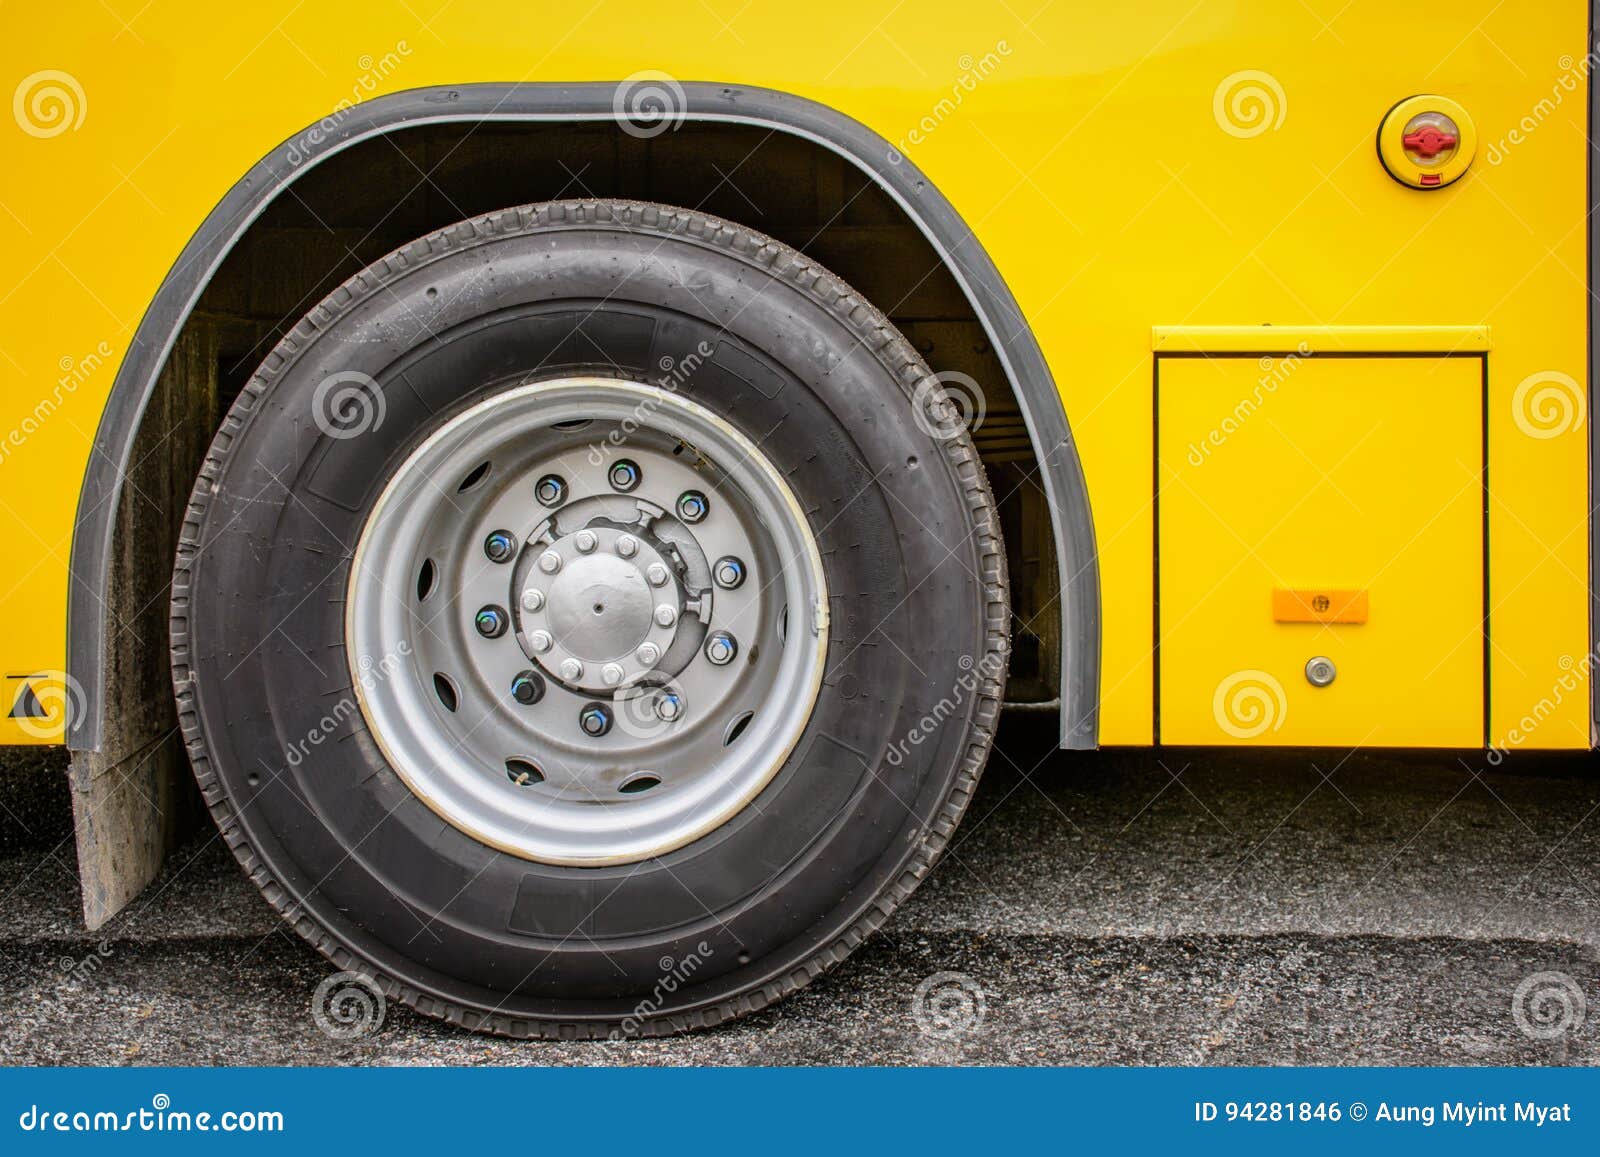 Колеса автобуса круг. Колесо автобуса. Колесо от автобуса. Колесо автобуса текстура.